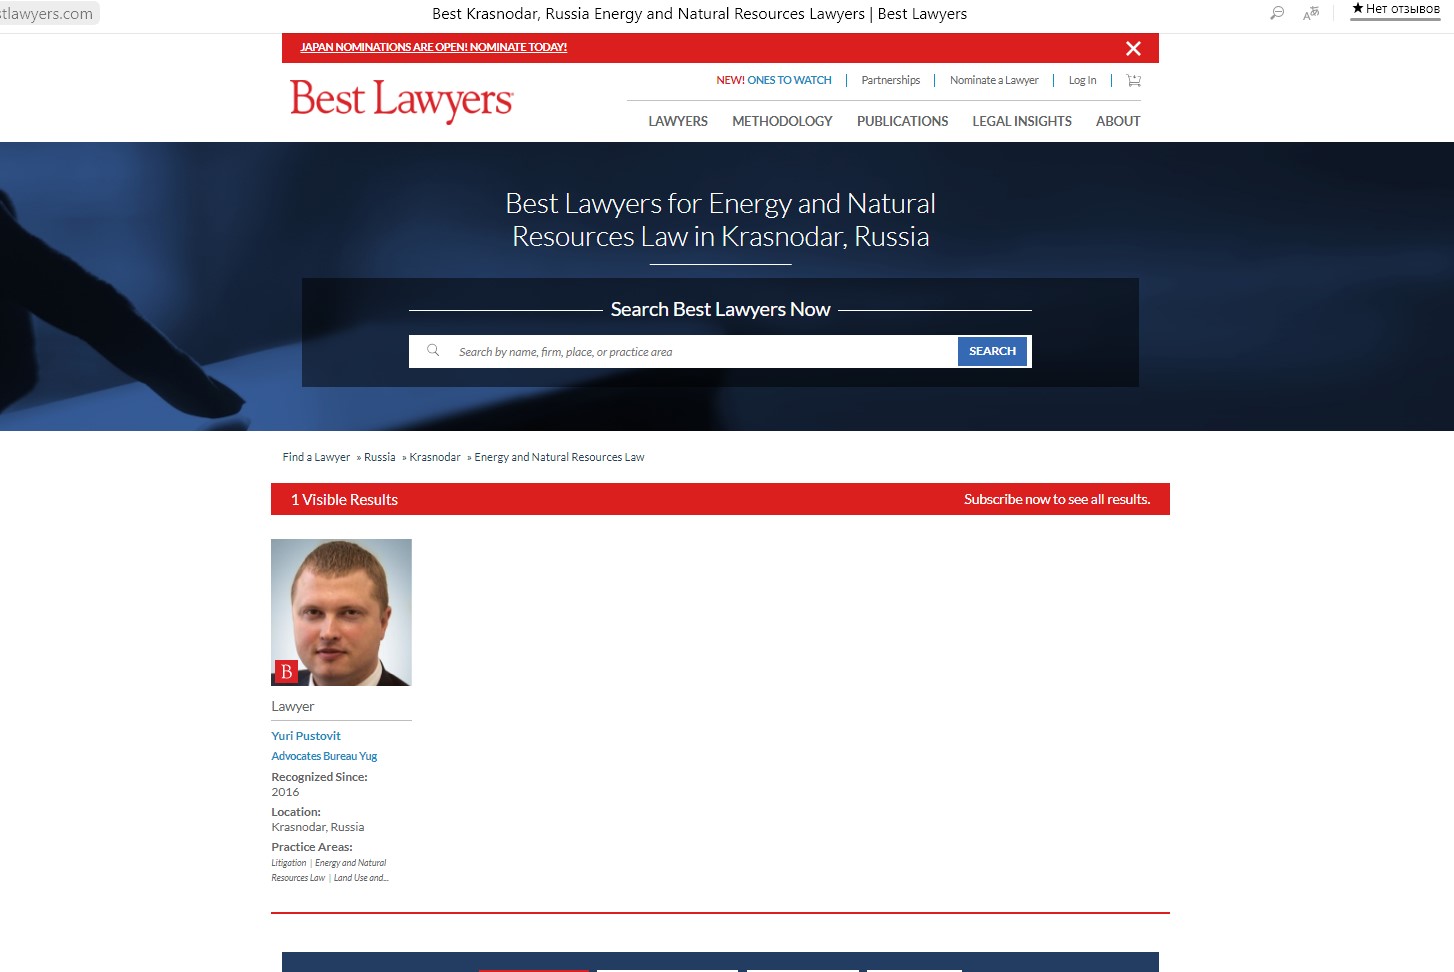 Best Lawyers Russia 2021 вновь отметил в качестве лучших юристов Адвокатского бюро Юг в номинациях «Энергетика и природные ресурсы», «Земельное право» и «Разрешение судебных споров».